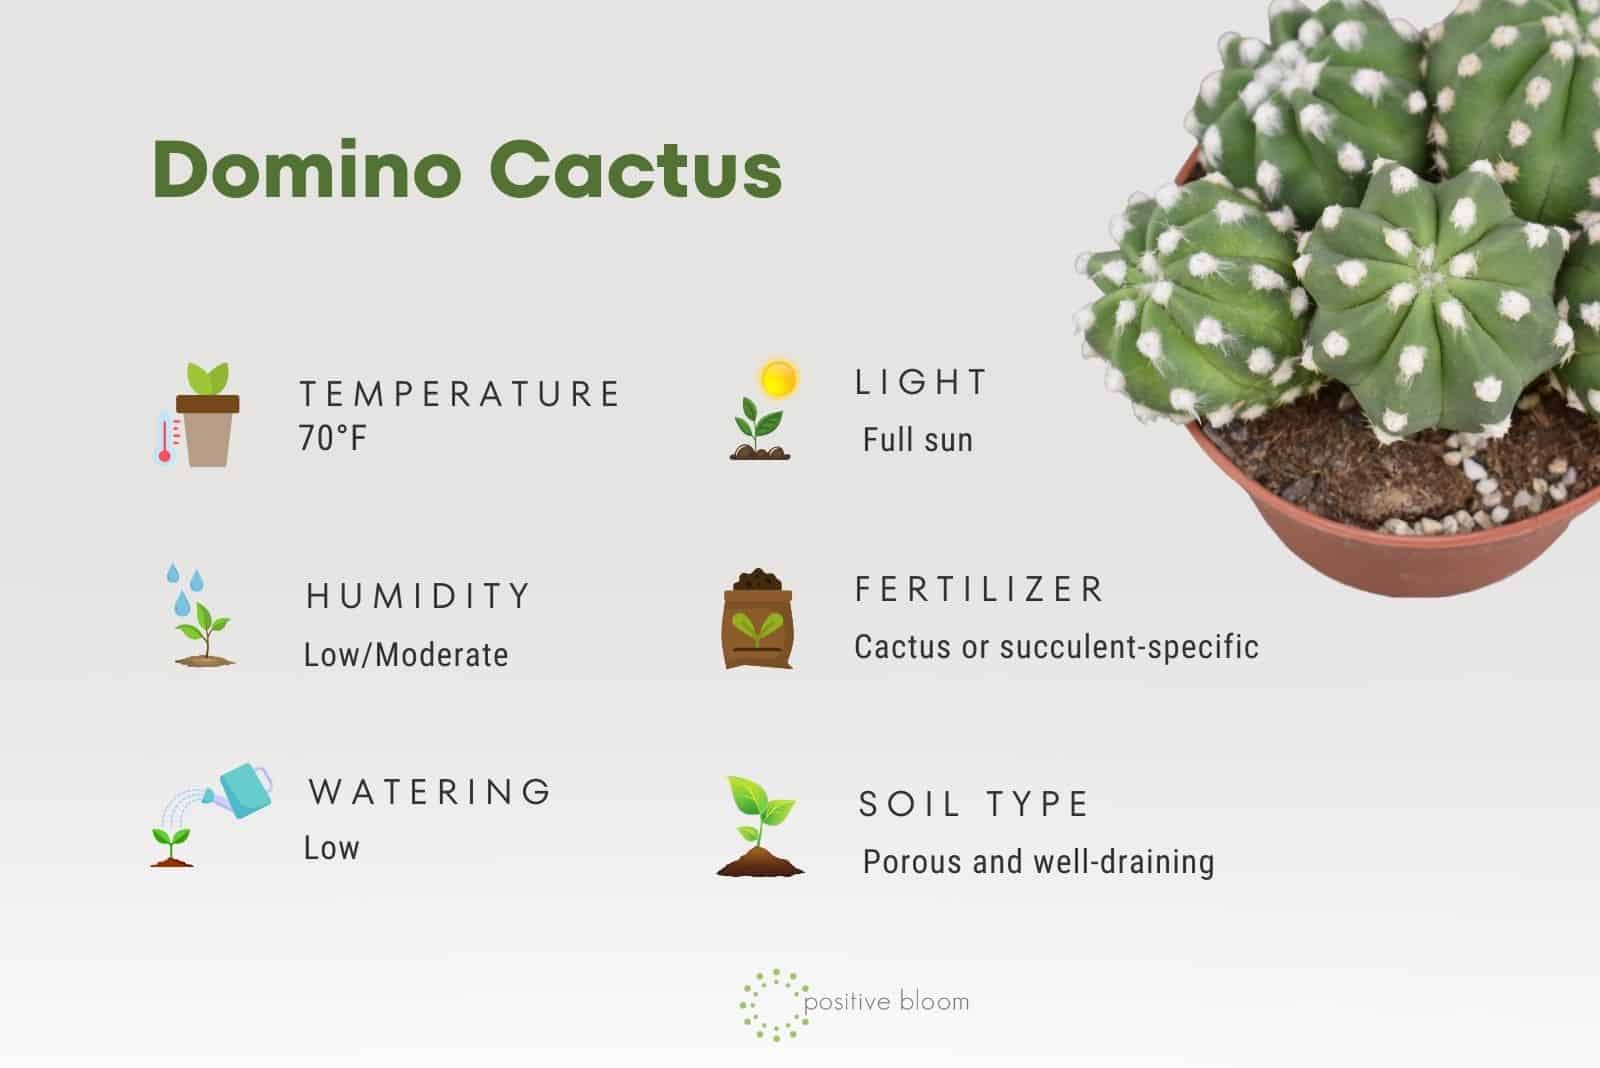 Domino Cactus facts